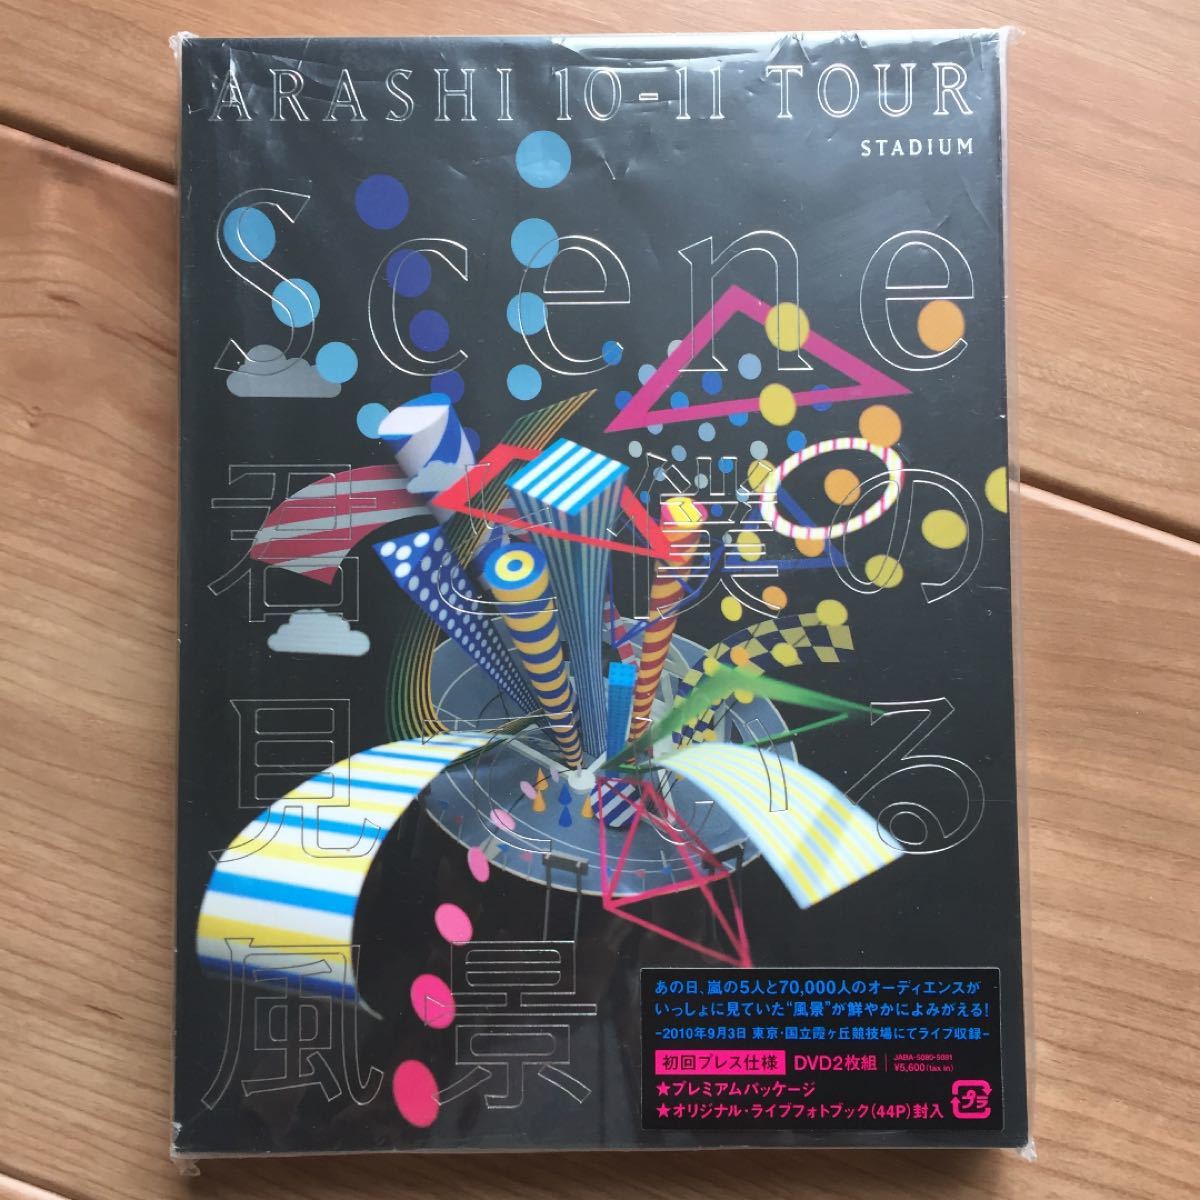 嵐/ARASHI 10-11 TOUR Scene〜君と僕の見ている風景